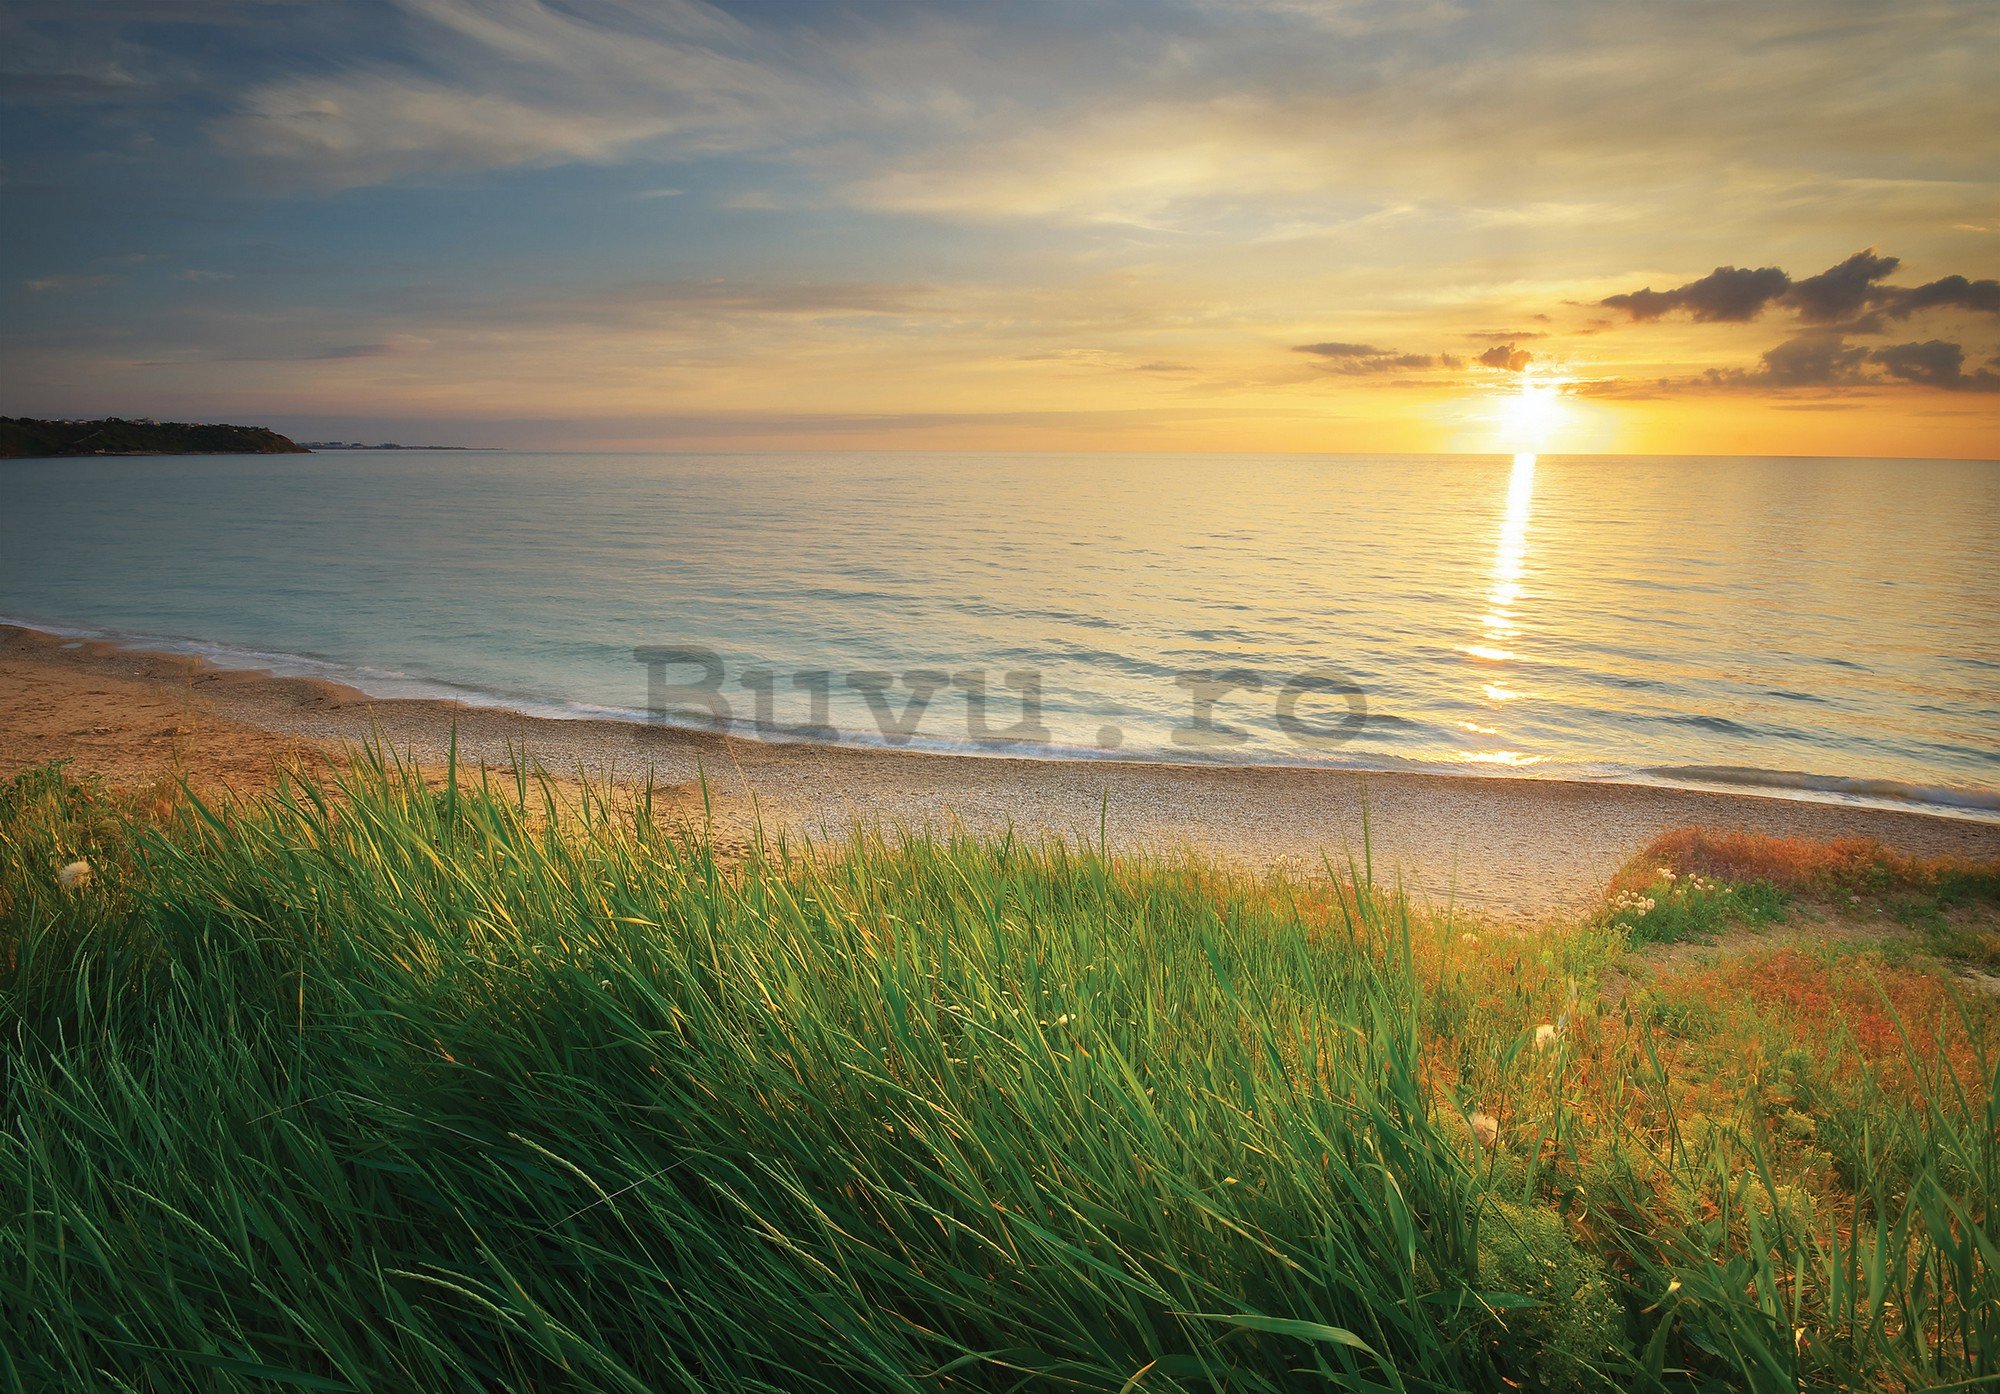 Fototapet vlies: Plajă la apus de soare - 368x254 cm